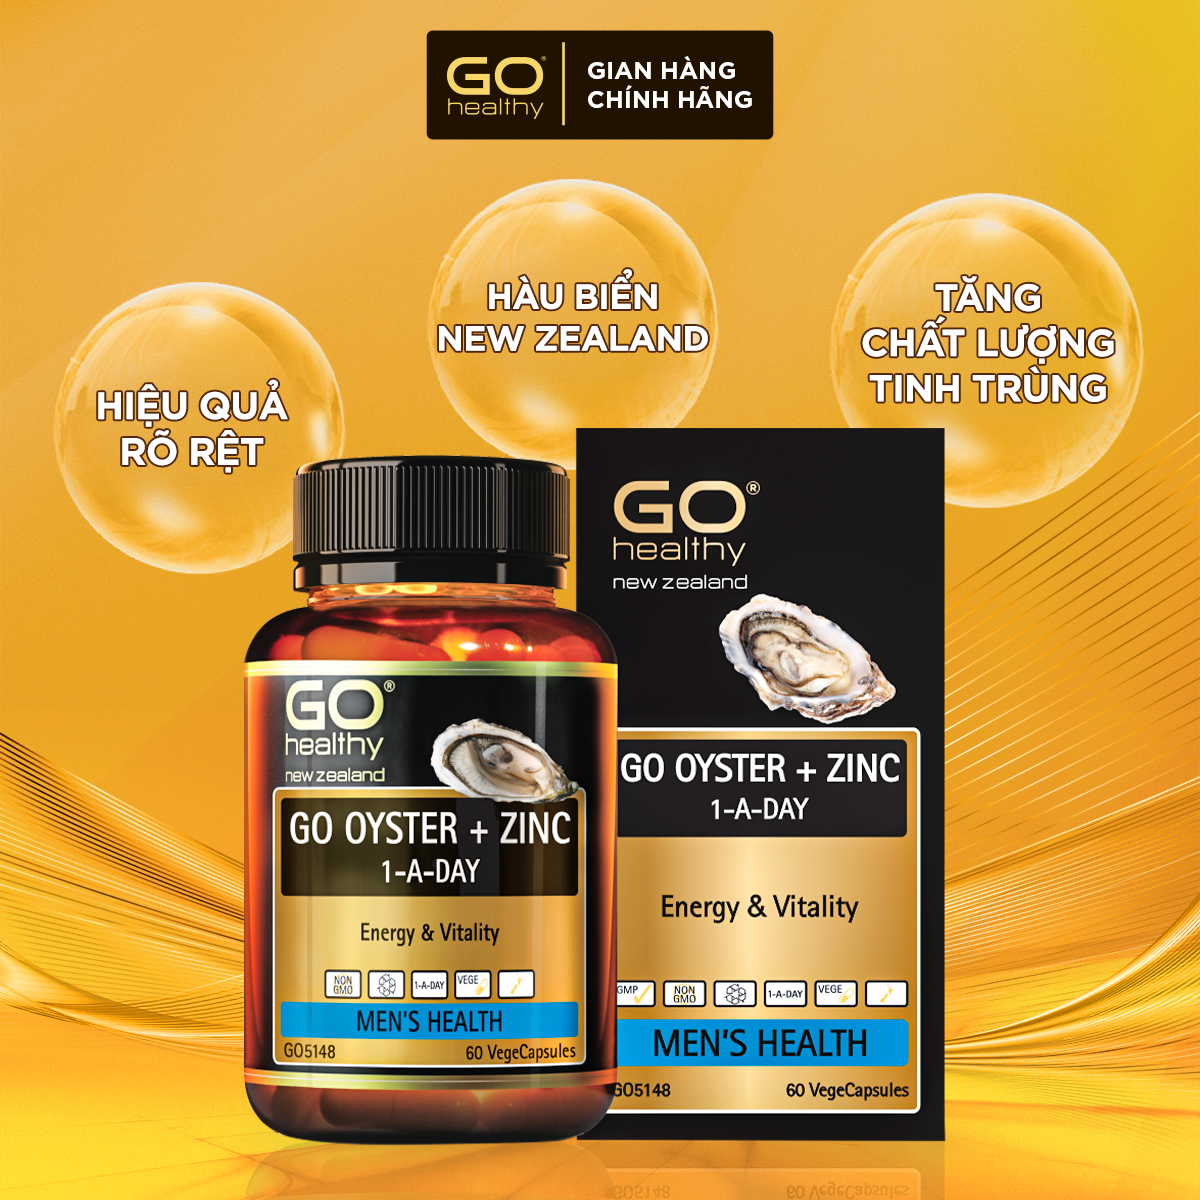 GO OYSTER + ZINC 1-A-DAY 60 VIÊN - Tinh chất hàu nhập khẩu chính hãng GO Healthy New Zealand